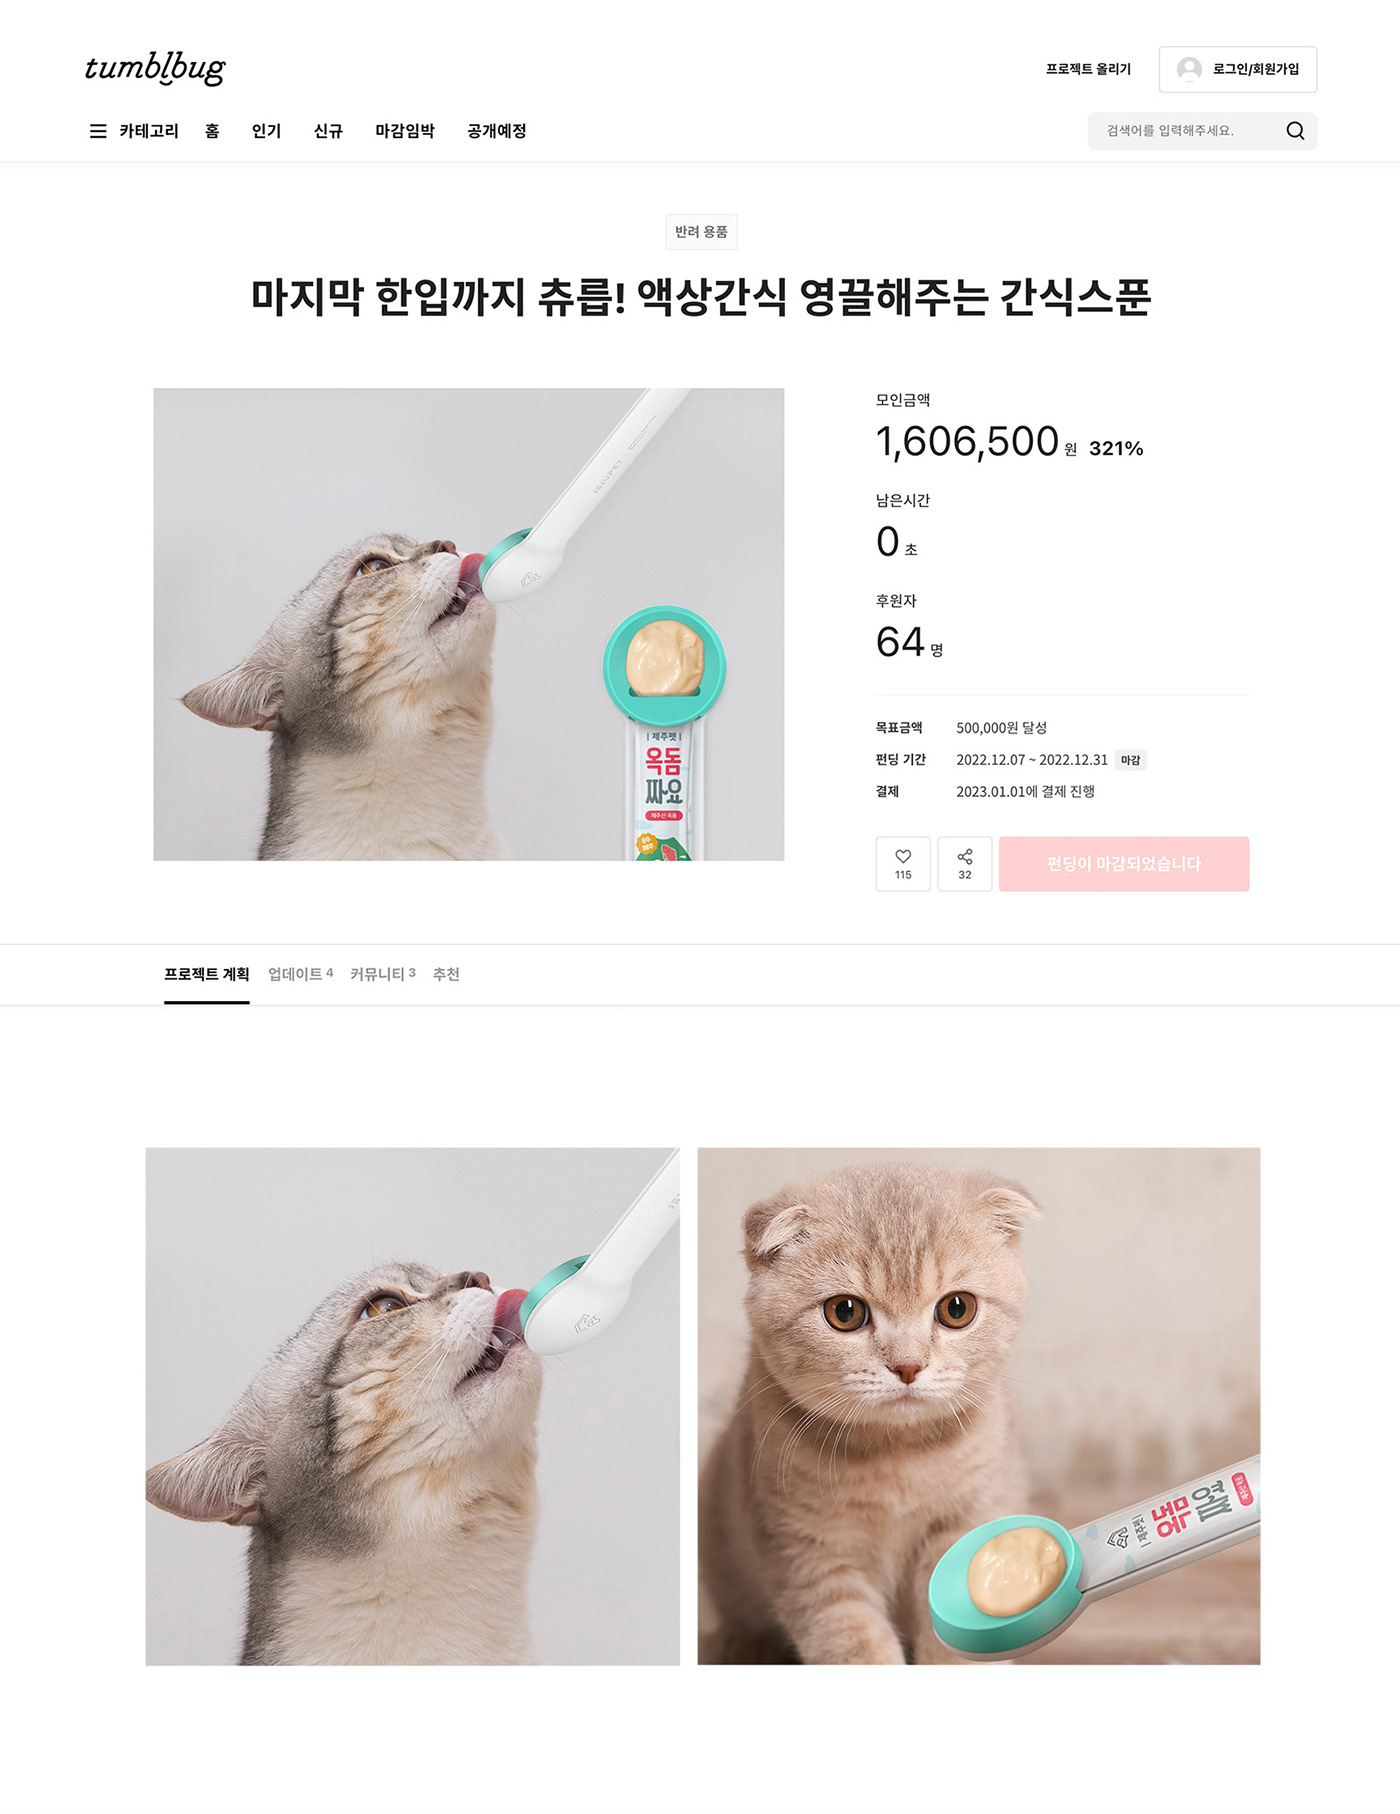 Pet snack Jeju dog Cat islansd